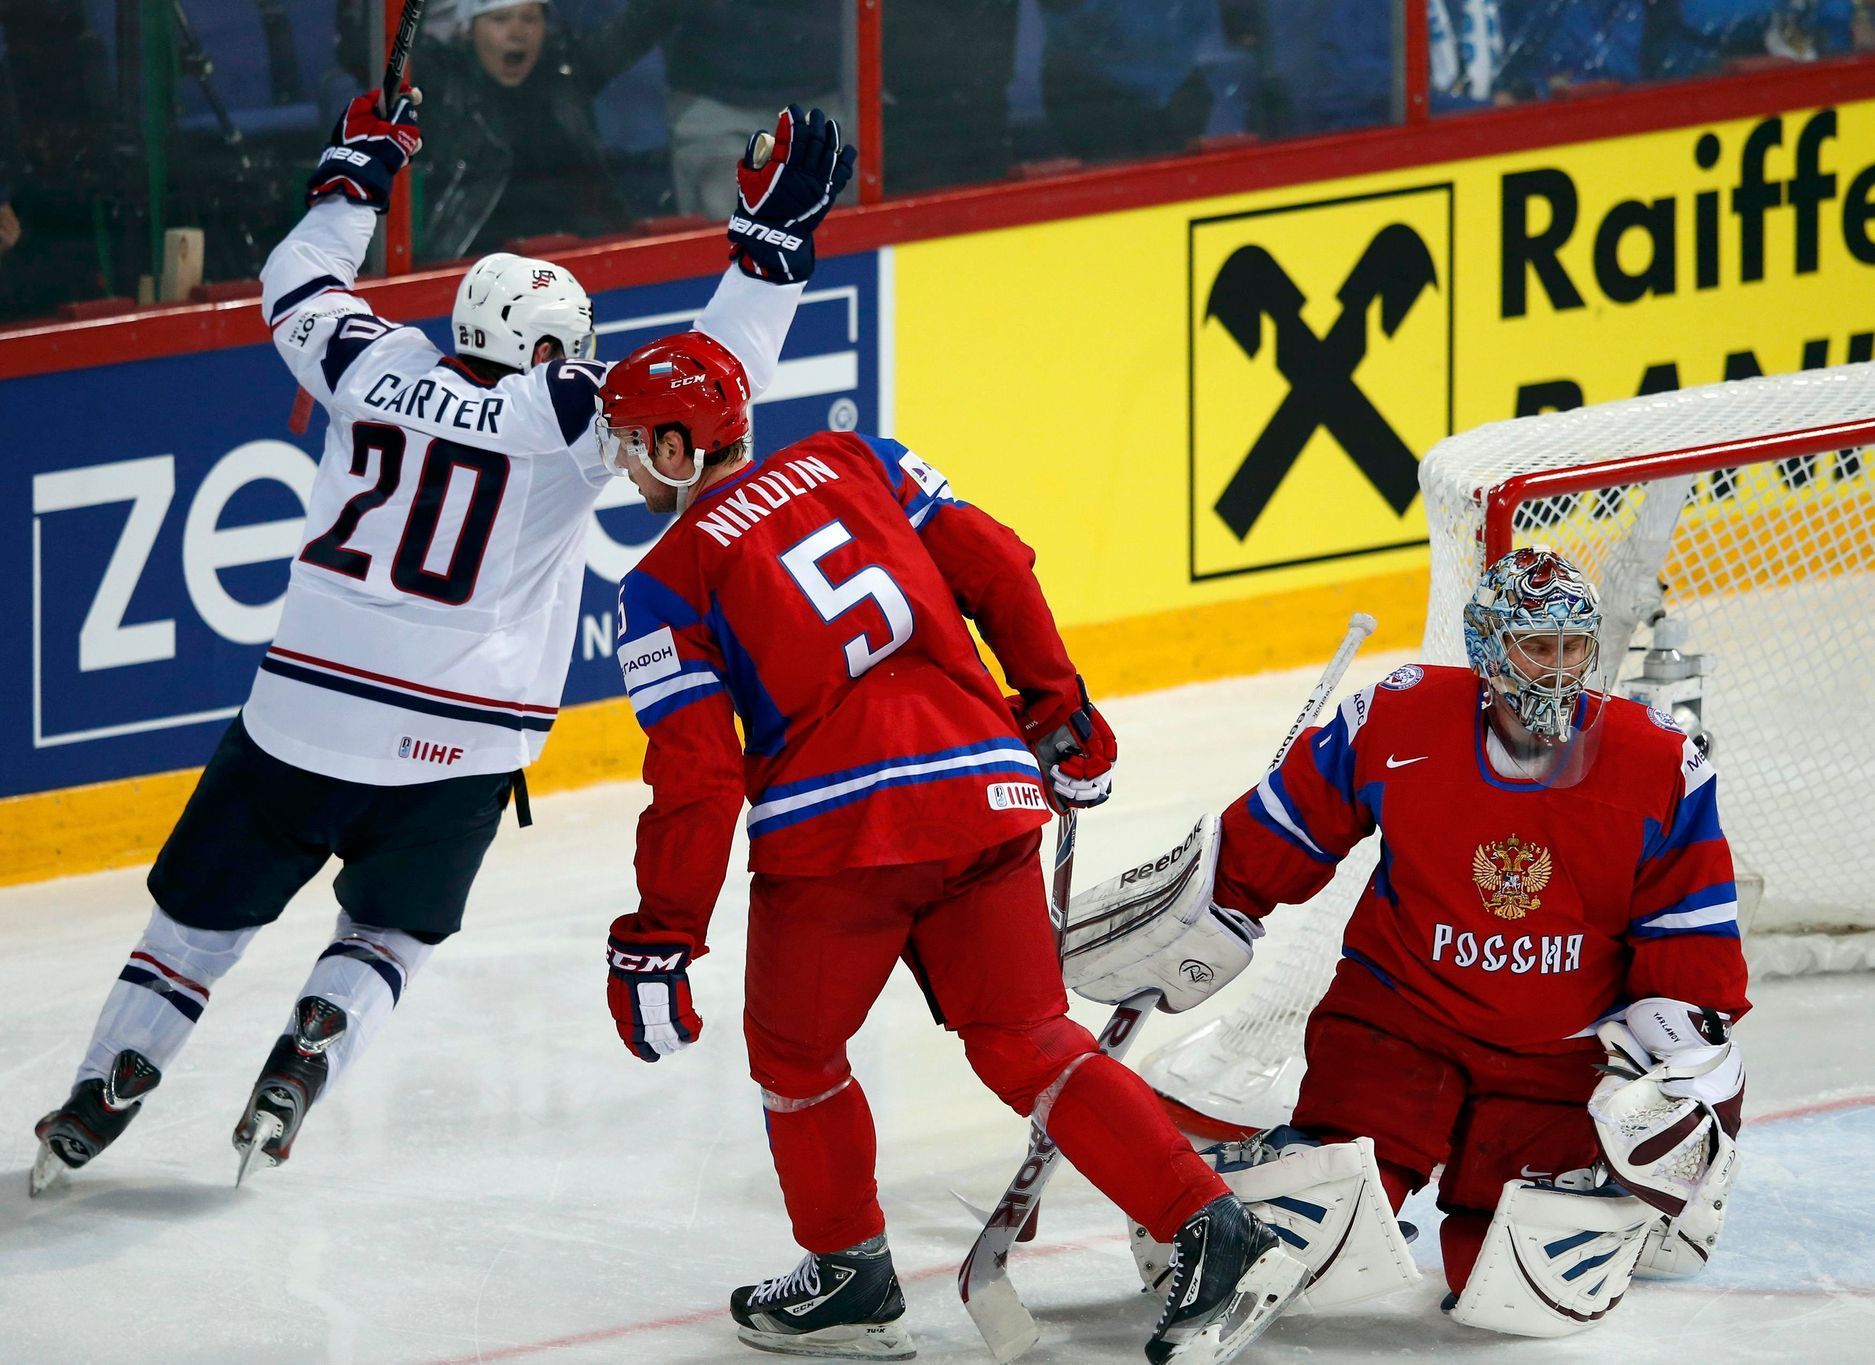 Hokej, MS 2013, USA - Rusko: Ryan Carter slaví gól